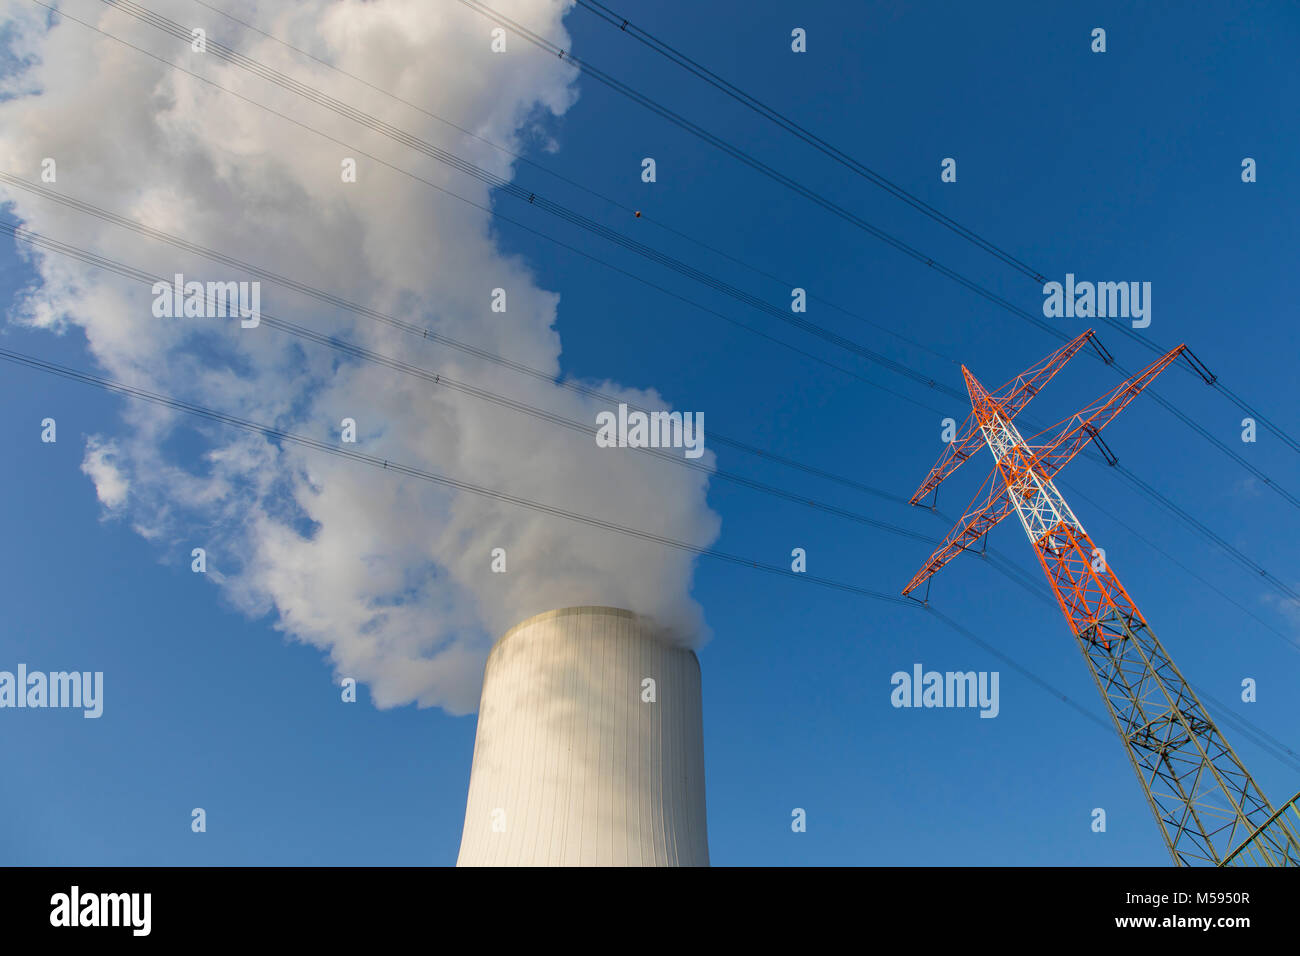 Kühlturm des Kohlekraftwerk Duisburg-Walsum, betrieben von der STEAG und der EVN AG, 181 Meter hoch, Wasserdampf Wolke, Hochspannungsleitung, Mast, Stockfoto